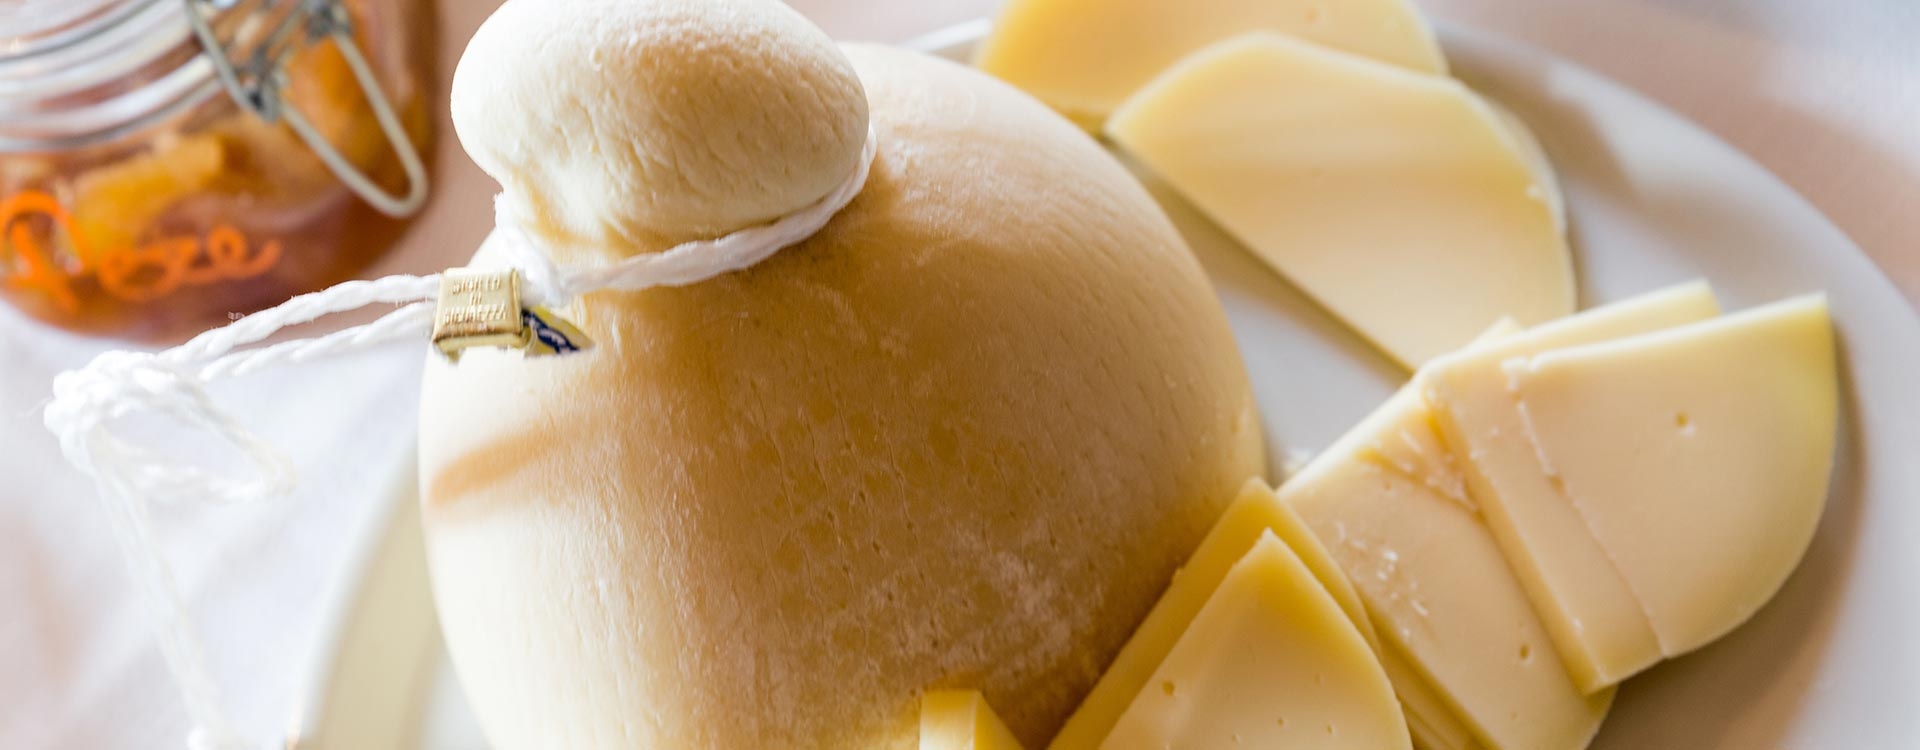 Provola, Provolone und Mozzarella: die Versionen Pasta-filata-Käse